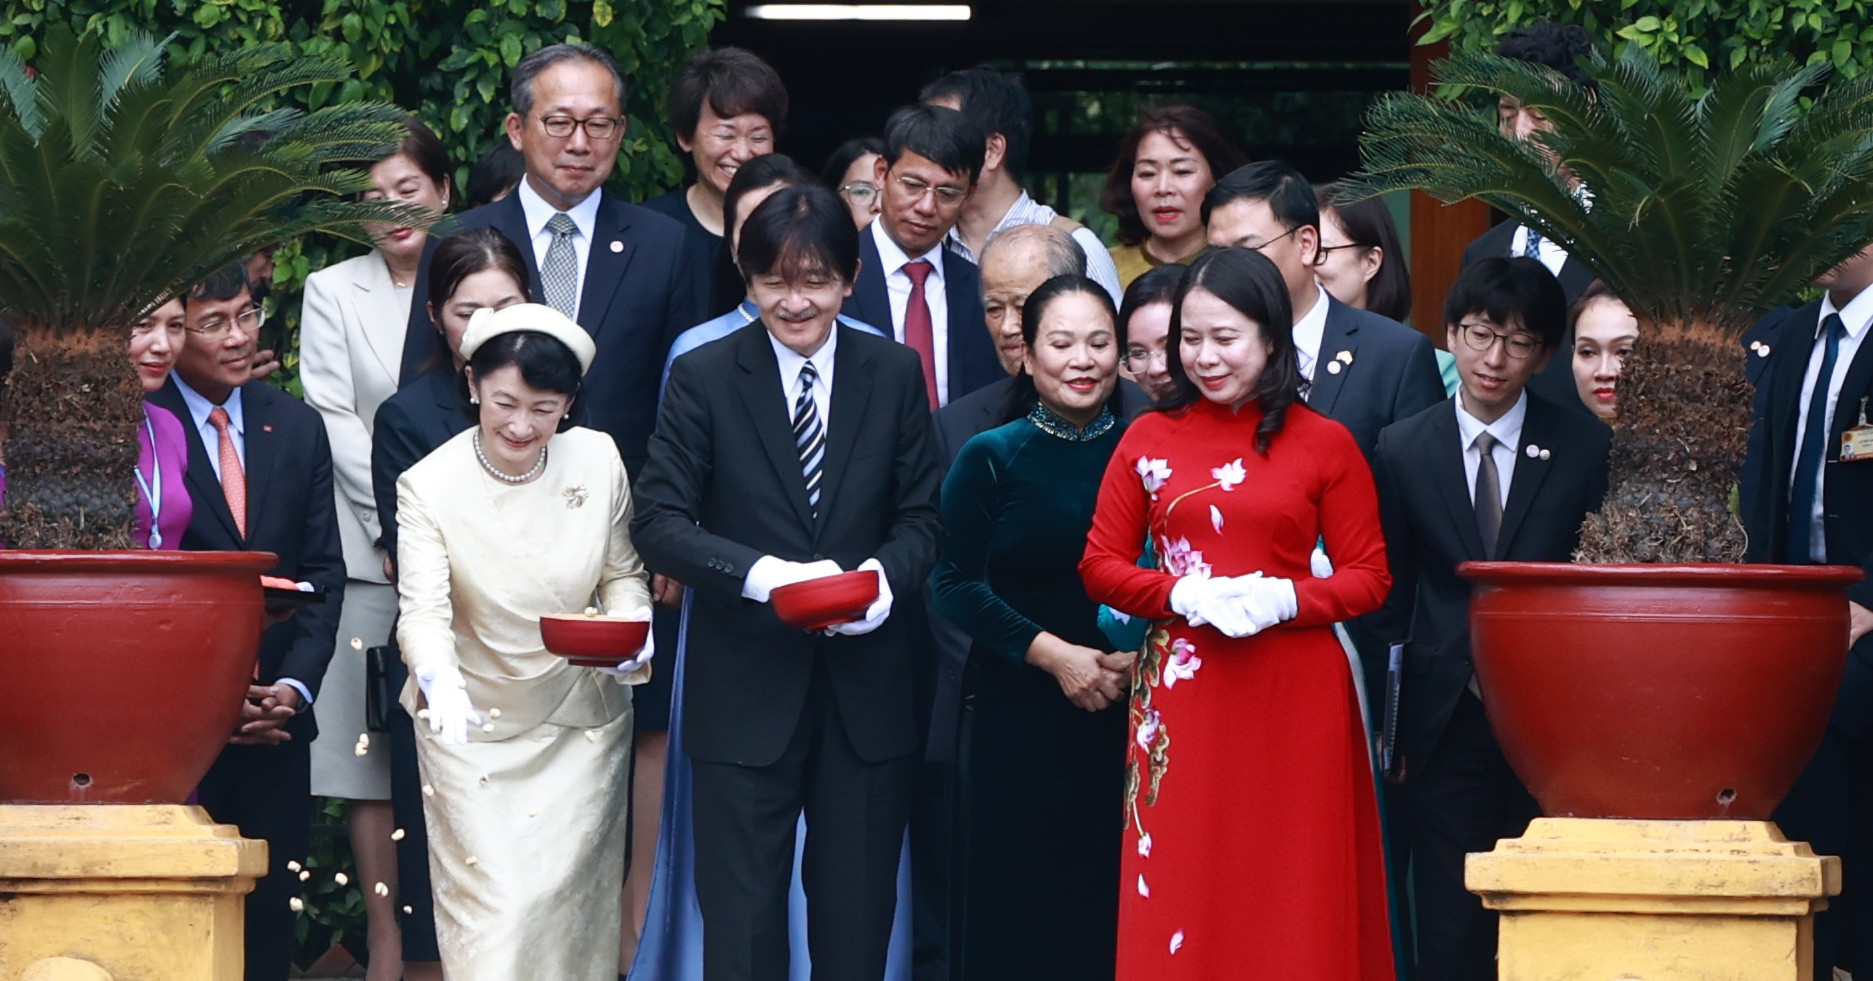 日本の皇太子ご夫妻は高床式住宅を訪れ、大統領官邸での歓迎式典に出席された。